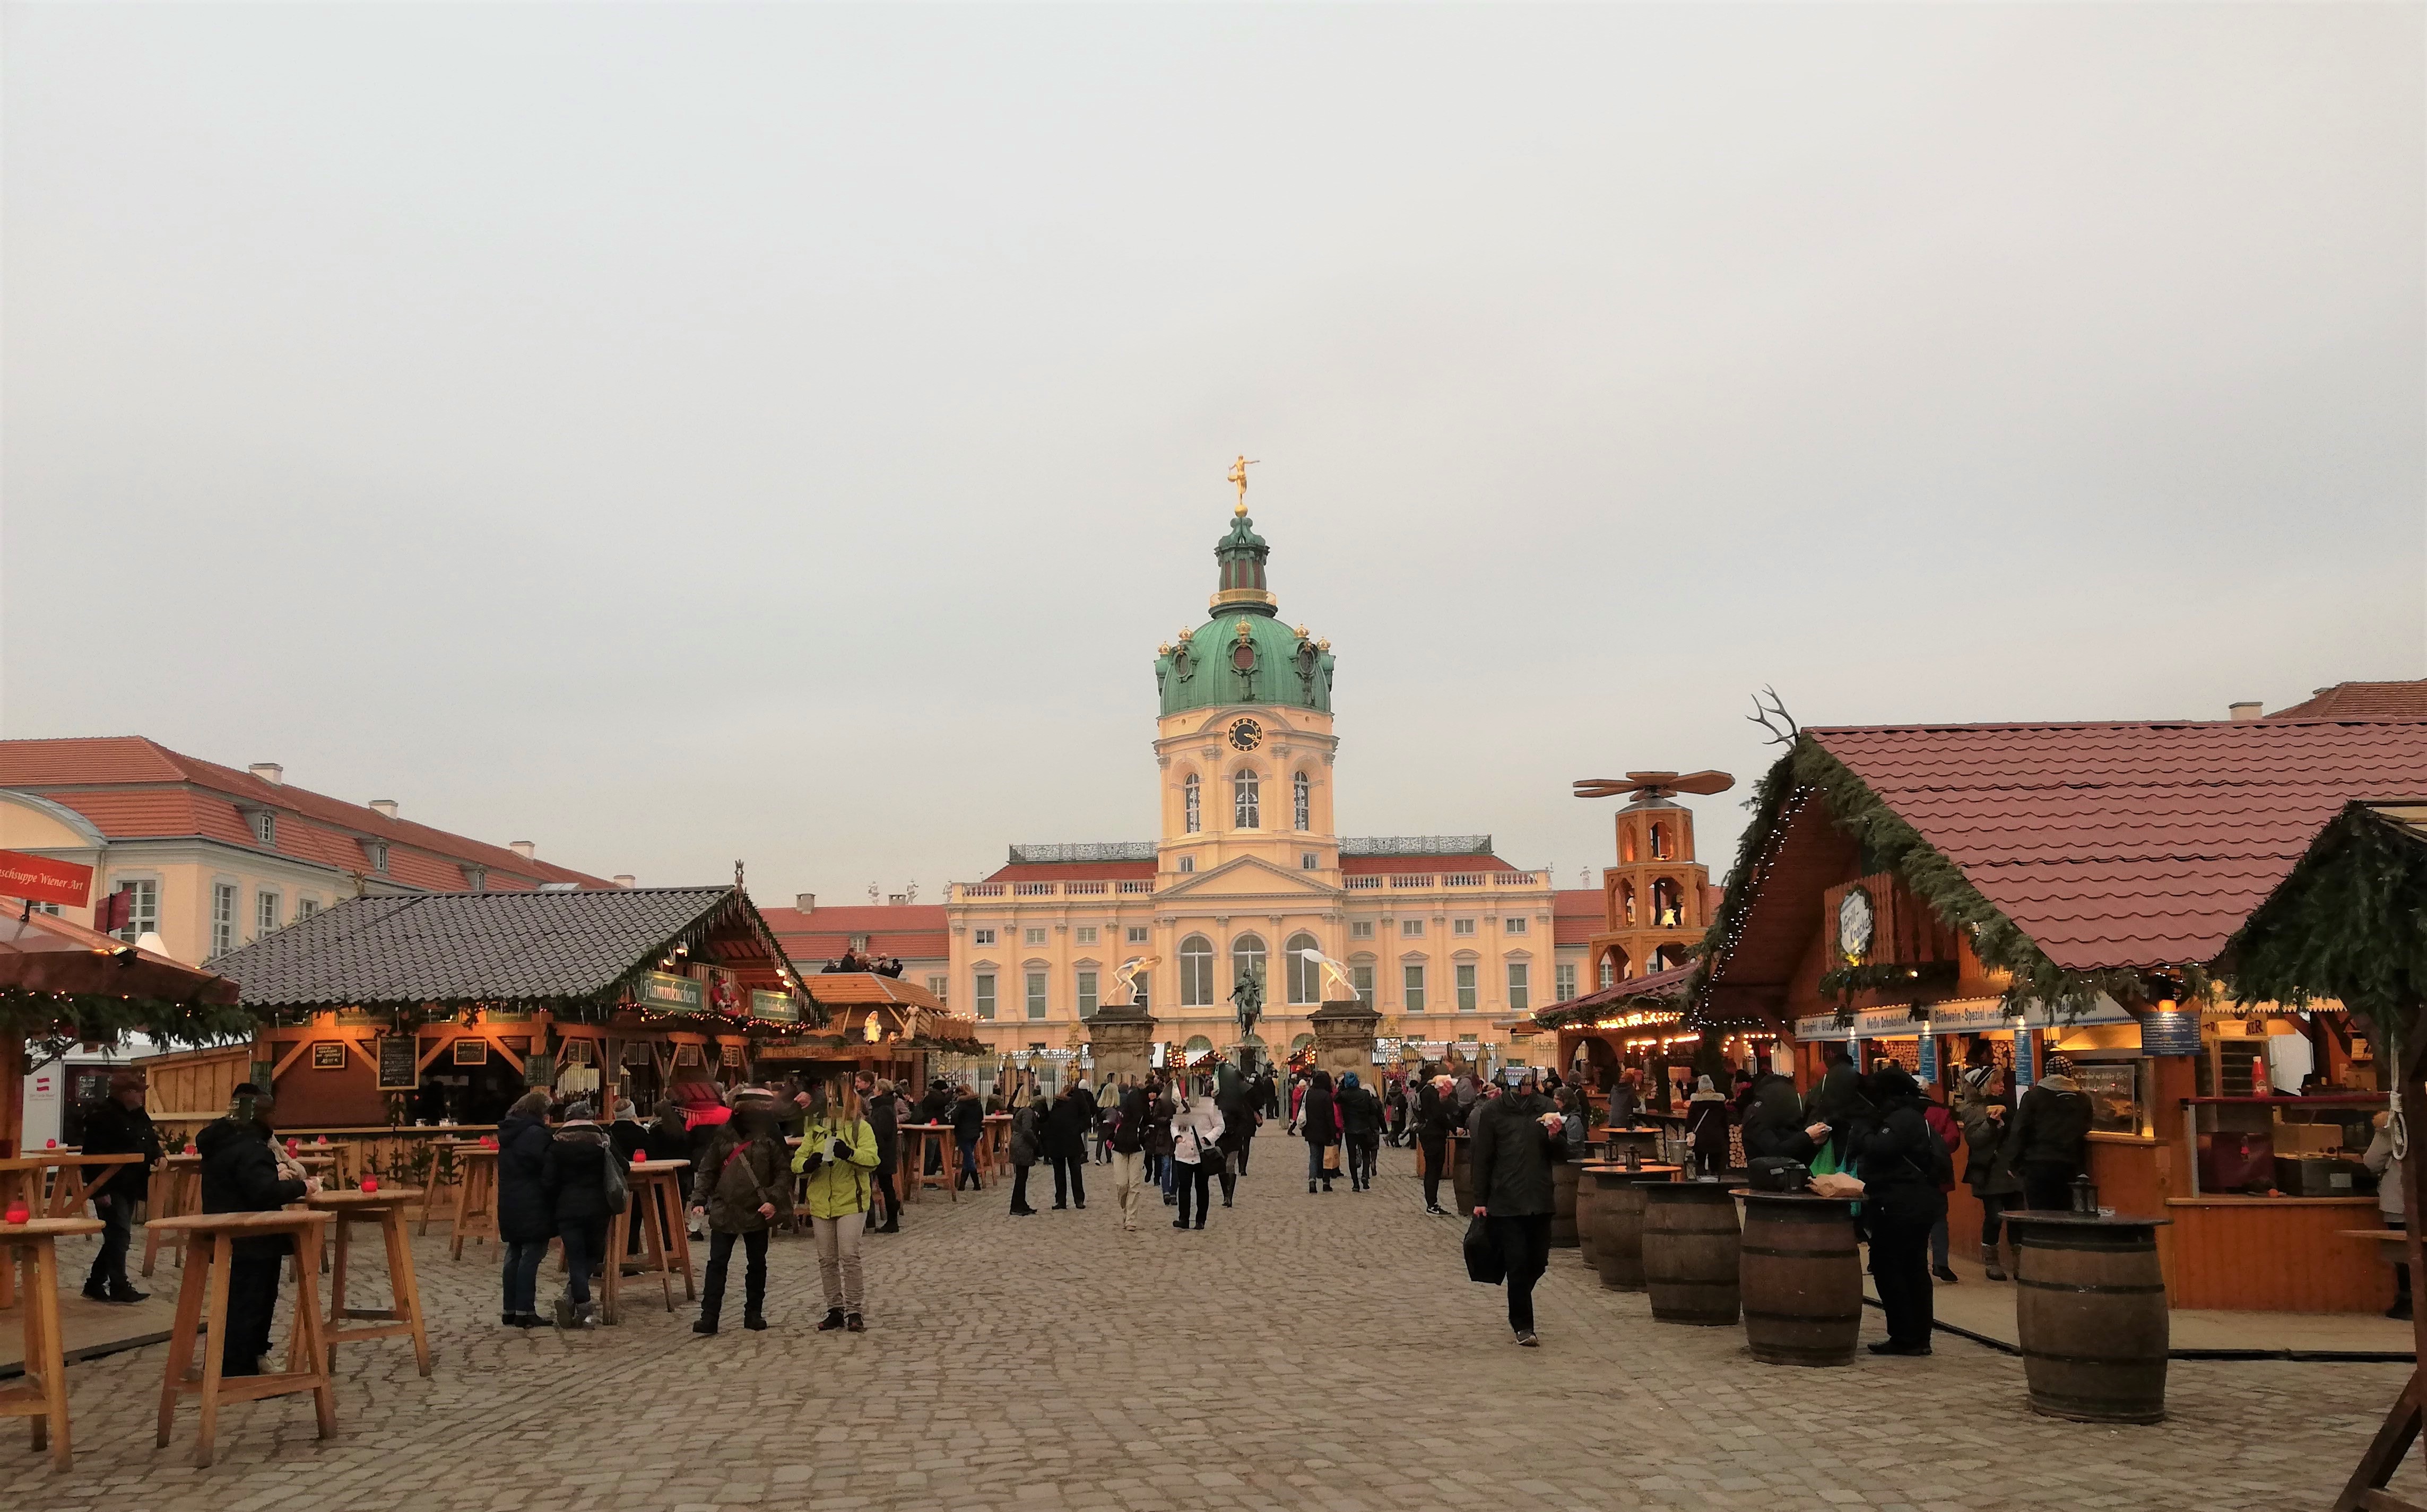 Weihnachtsmarkt am Schloss Charlottenburg.
